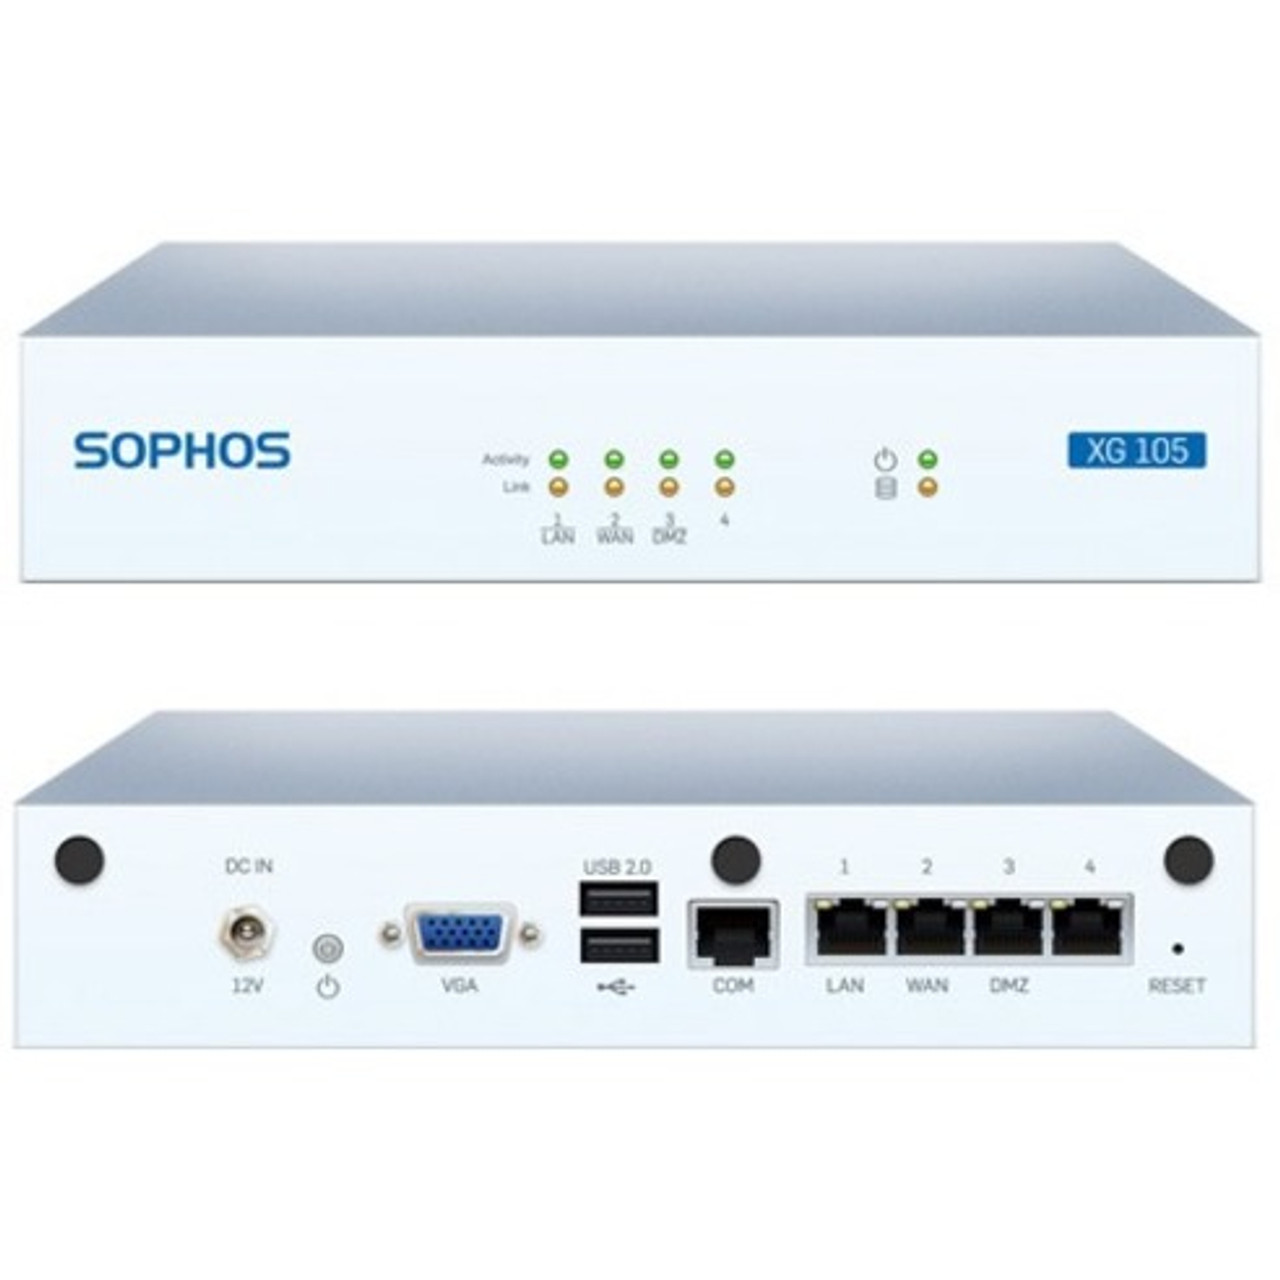 Sophos XG 105w Network Security/Firewall Appliance - XW1ATCHUS